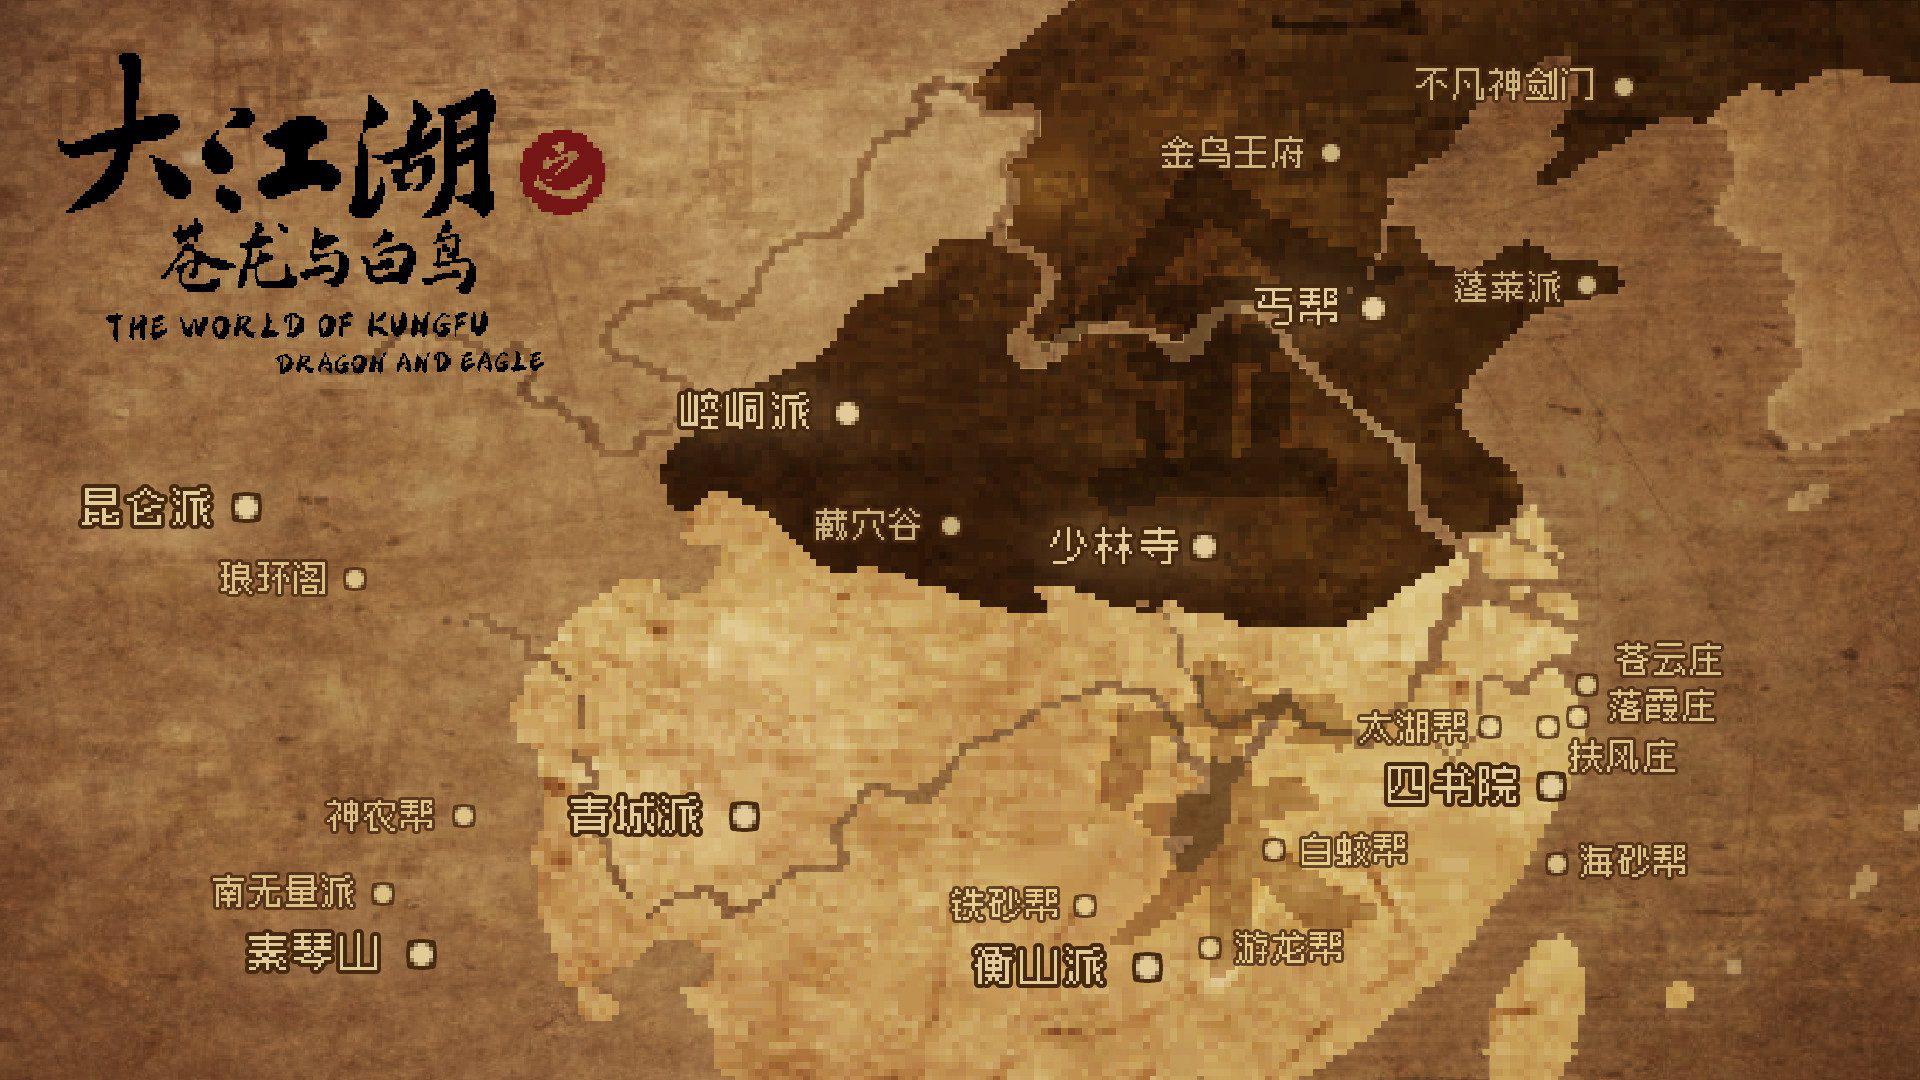 大江湖之苍龙与白鸟 | The World Of Kong Fu-8